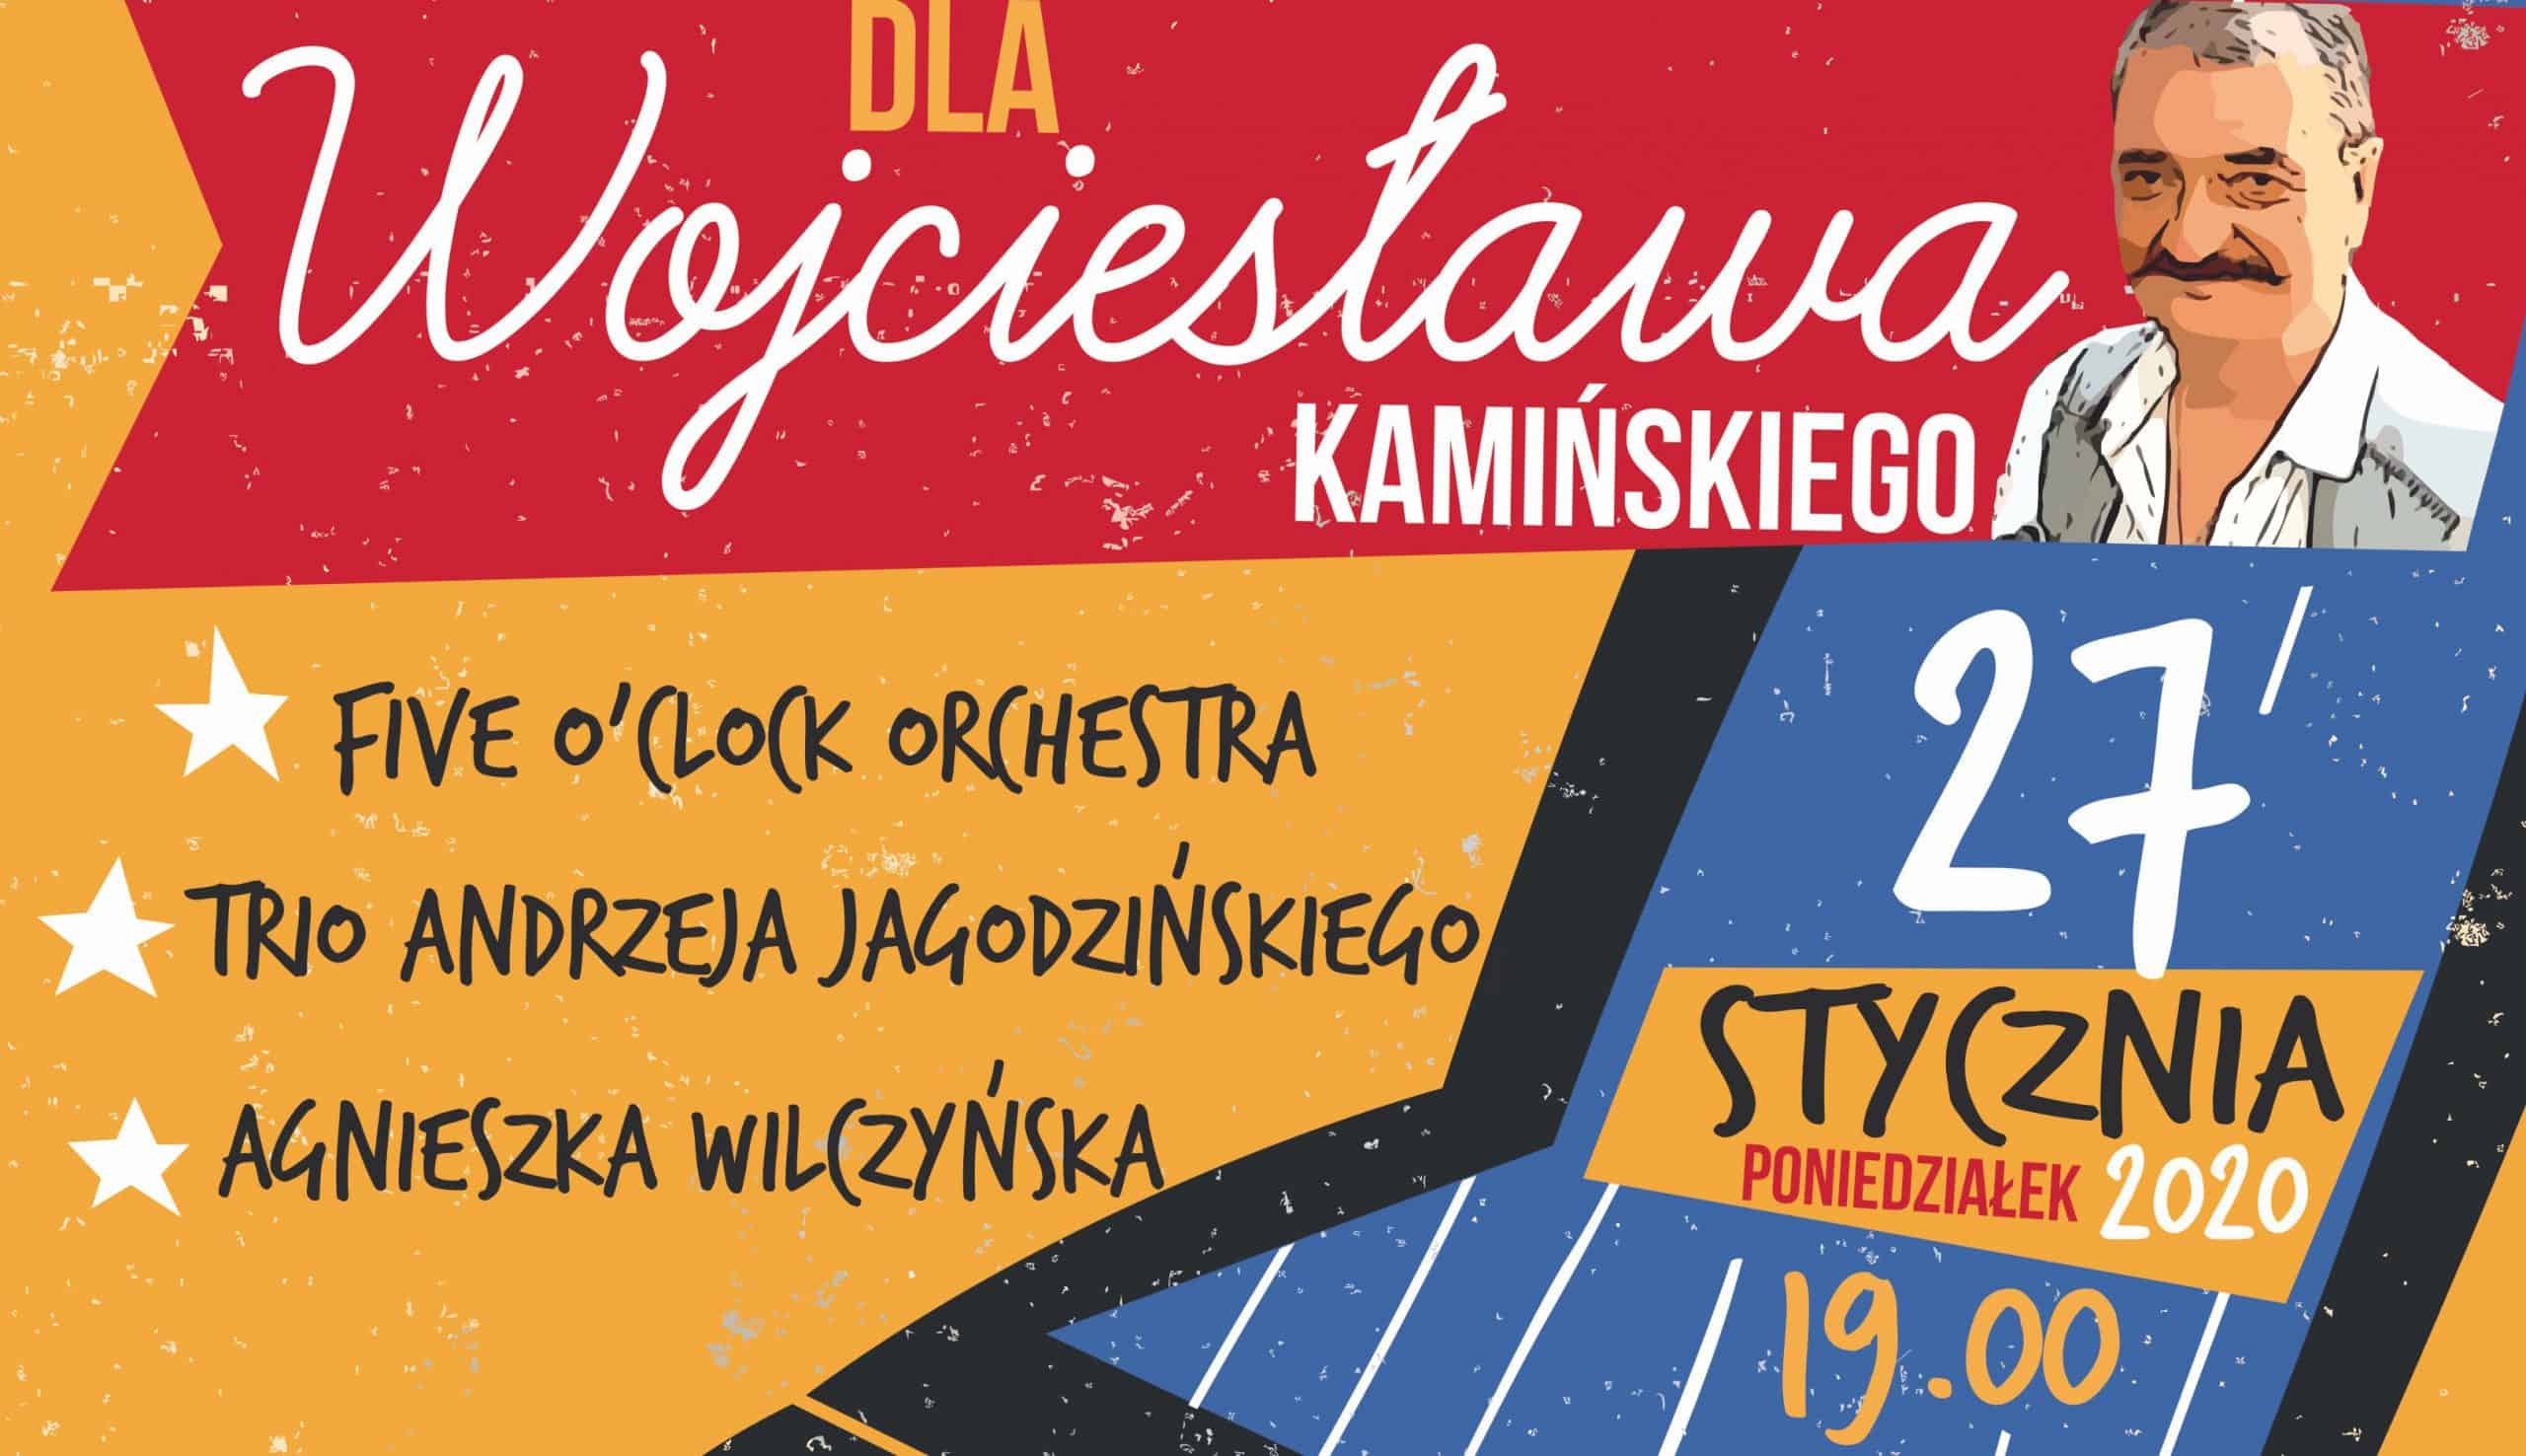 You are currently viewing Gramy dla Wojtka „Wojciesława” Kamińskiego – Five O`Clock Orchestra, Andrzej Jagodziński Trio